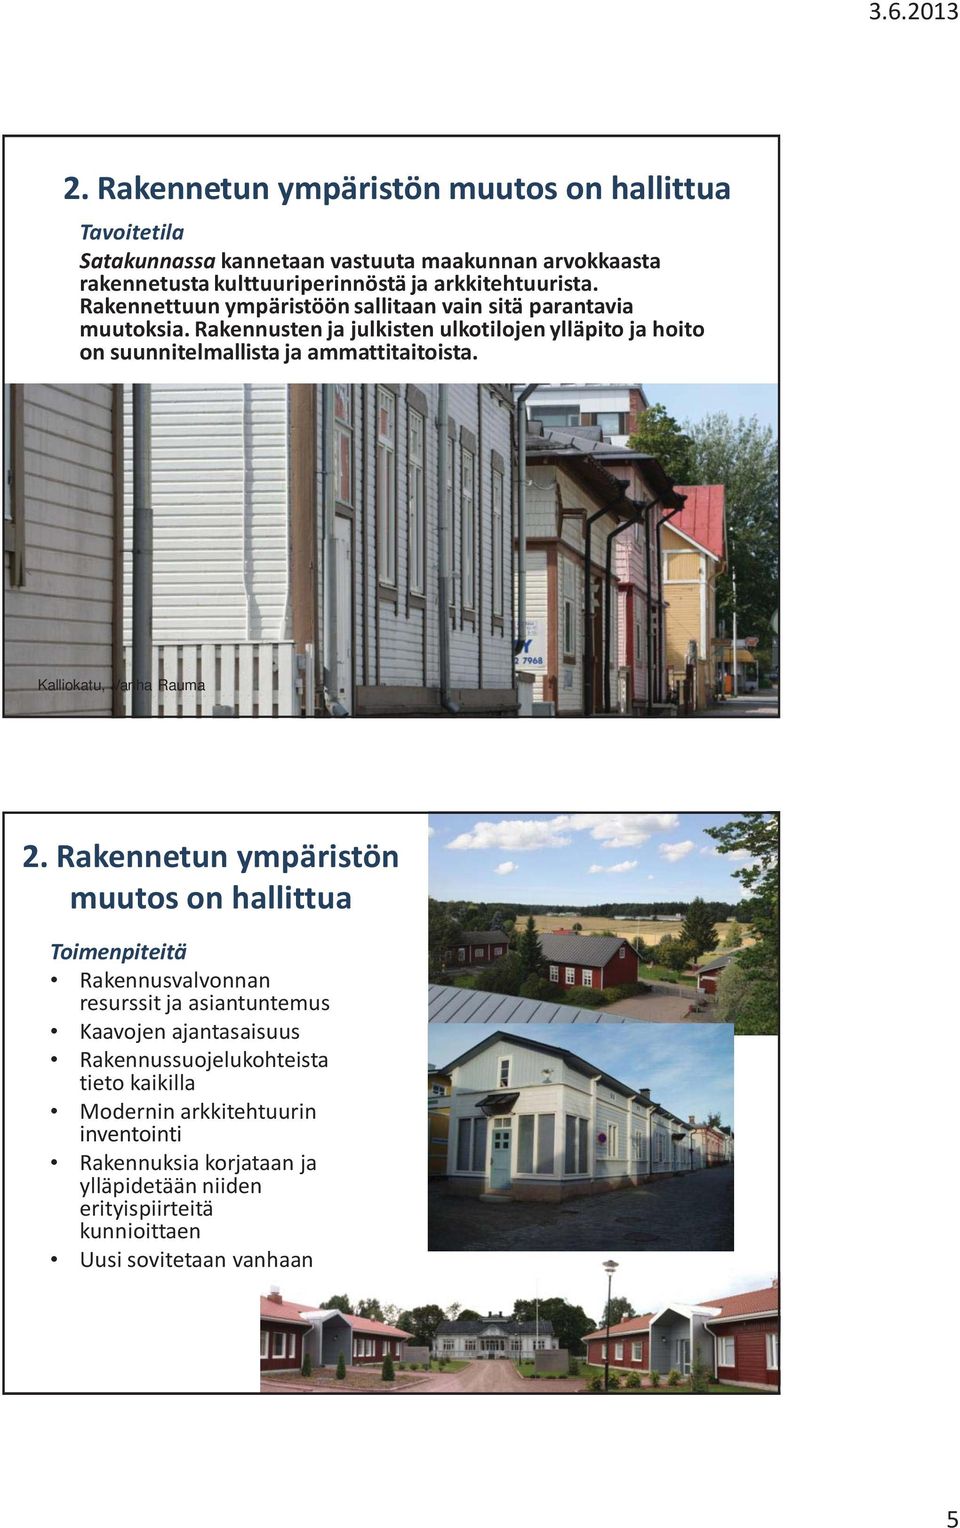 Rakennusten ja julkisten ulkotilojen ylläpito ja hoito on suunnitelmallista ja ammattitaitoista. Kalliokatu, Vanha Rauma 2.